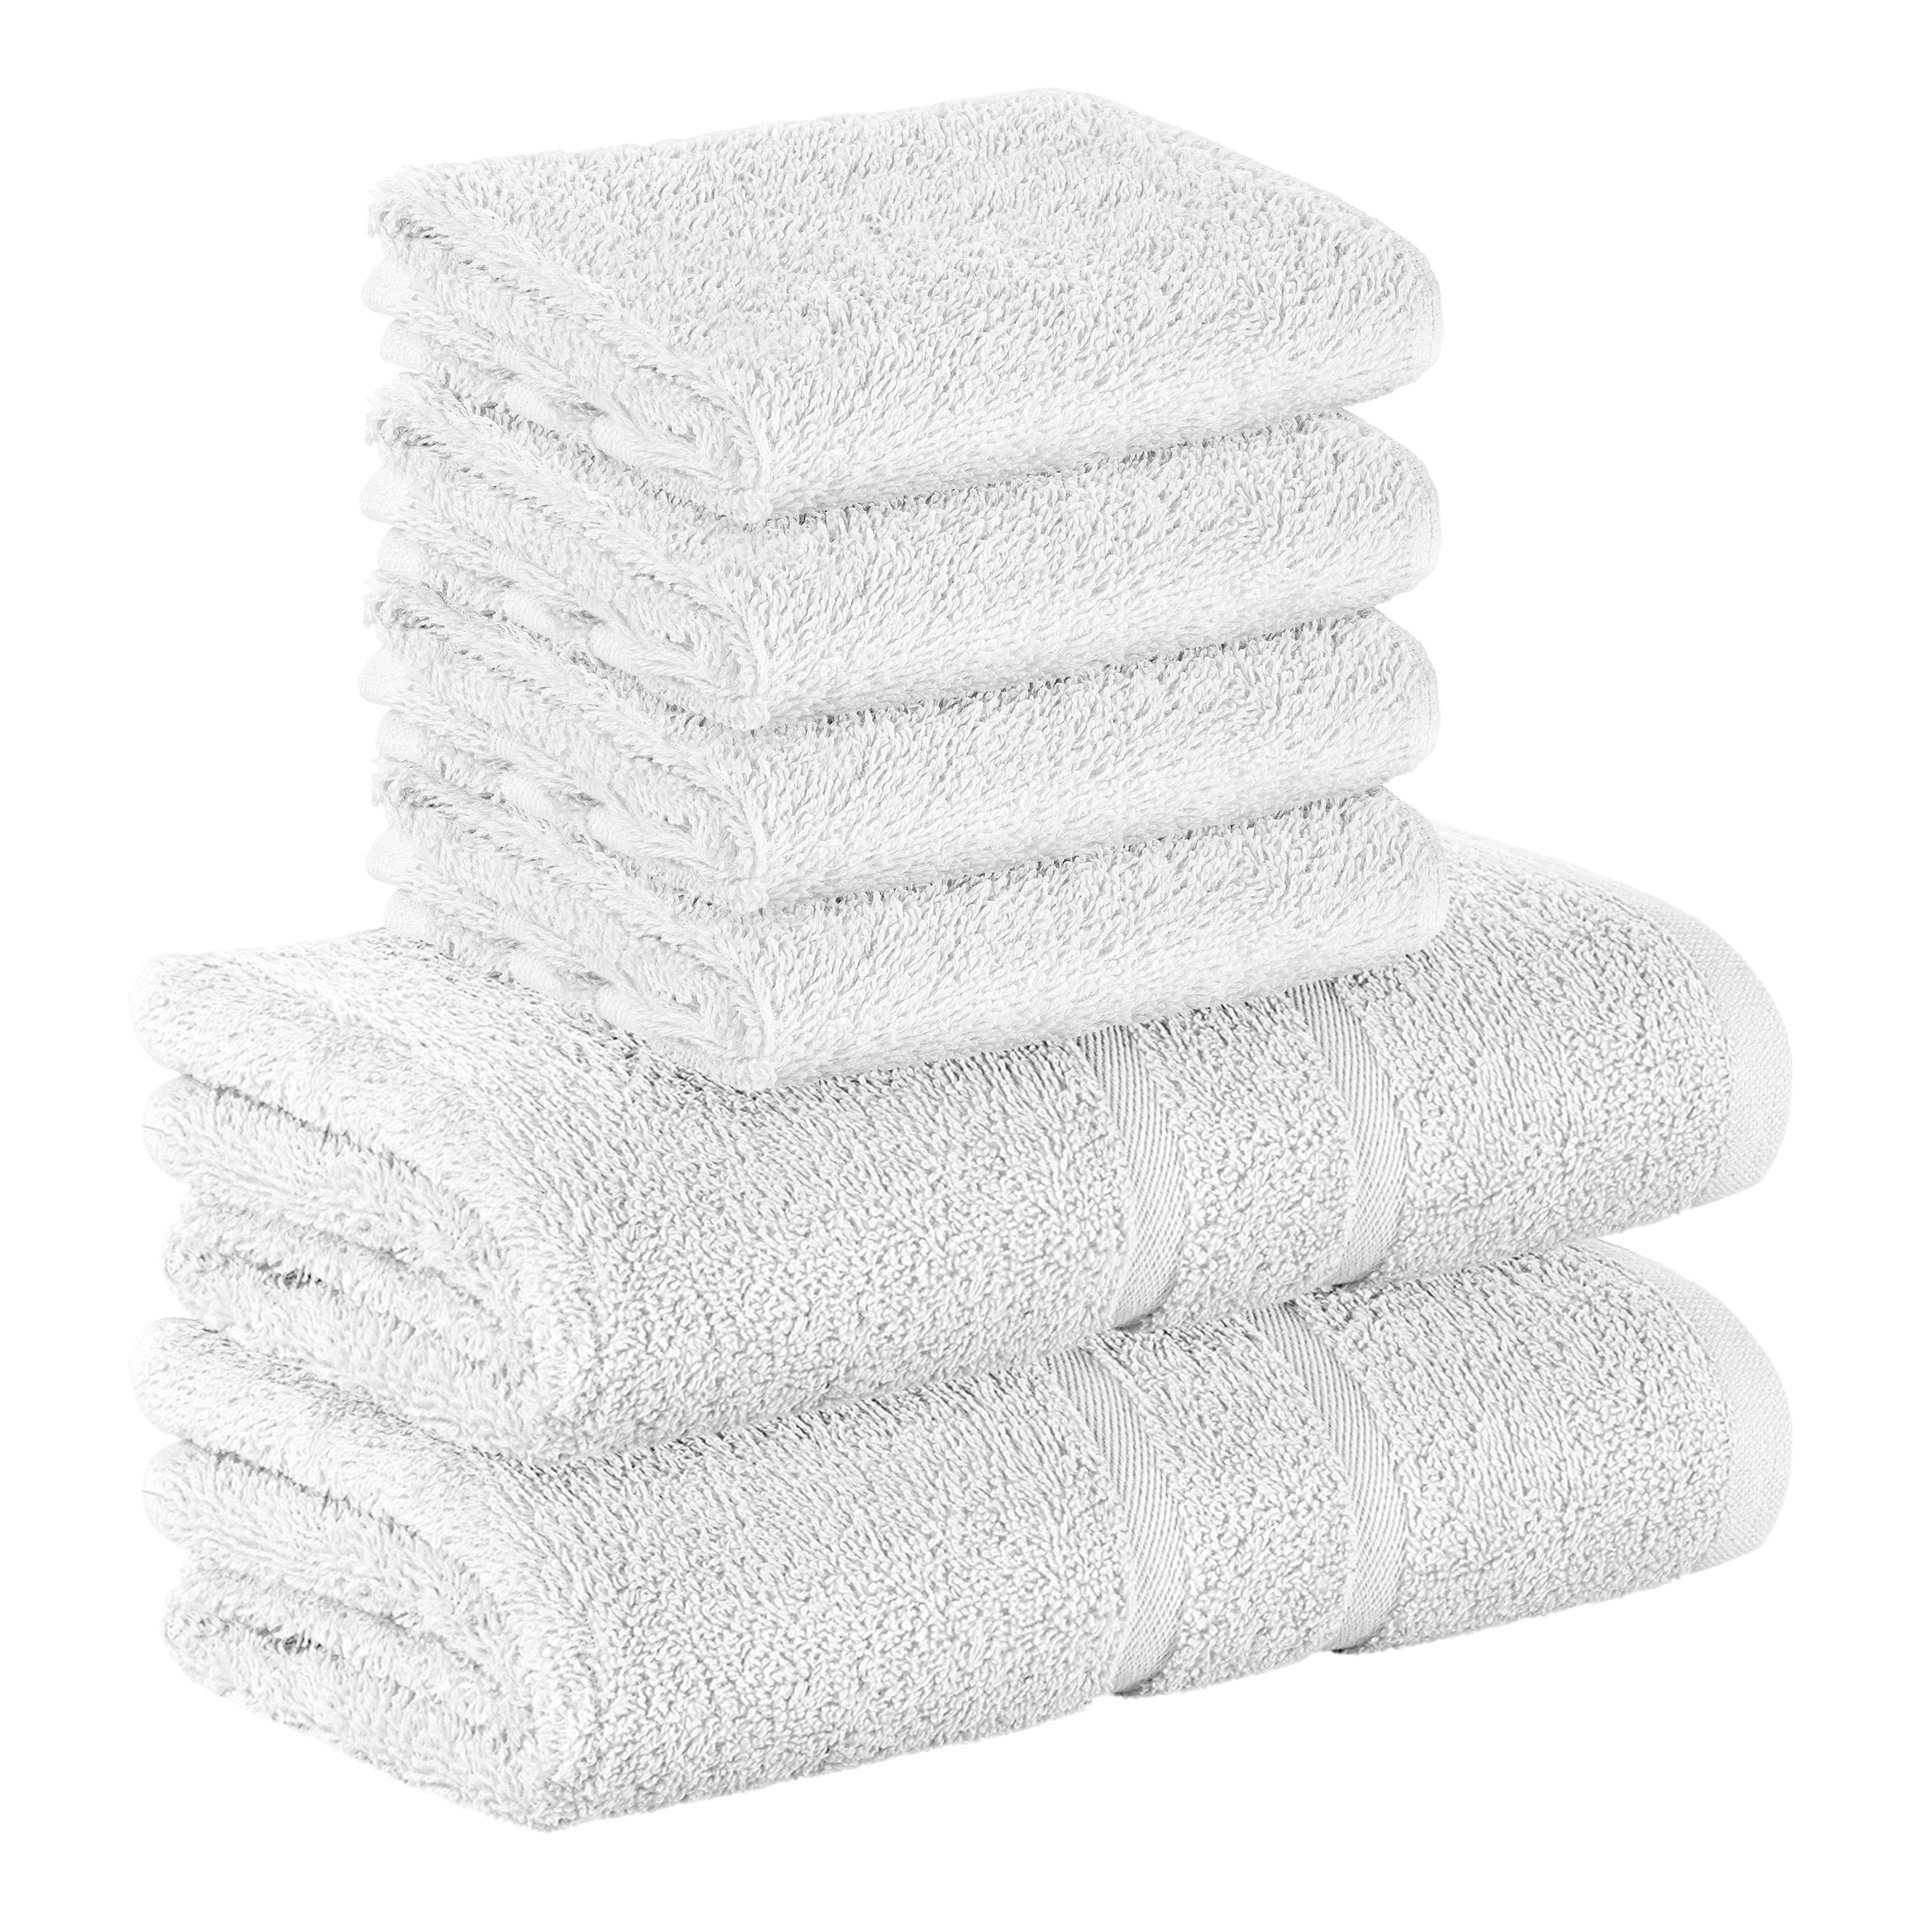 StickandShine Handtuch Set 4x Gästehandtuch 2x Handtücher als SET in verschiedenen Farben (6 Teilig) 100% Baumwolle 500 GSM Frottee 6er Handtuch Pack, (Sparset), 100% Baumwolle 500 GSM Weiß